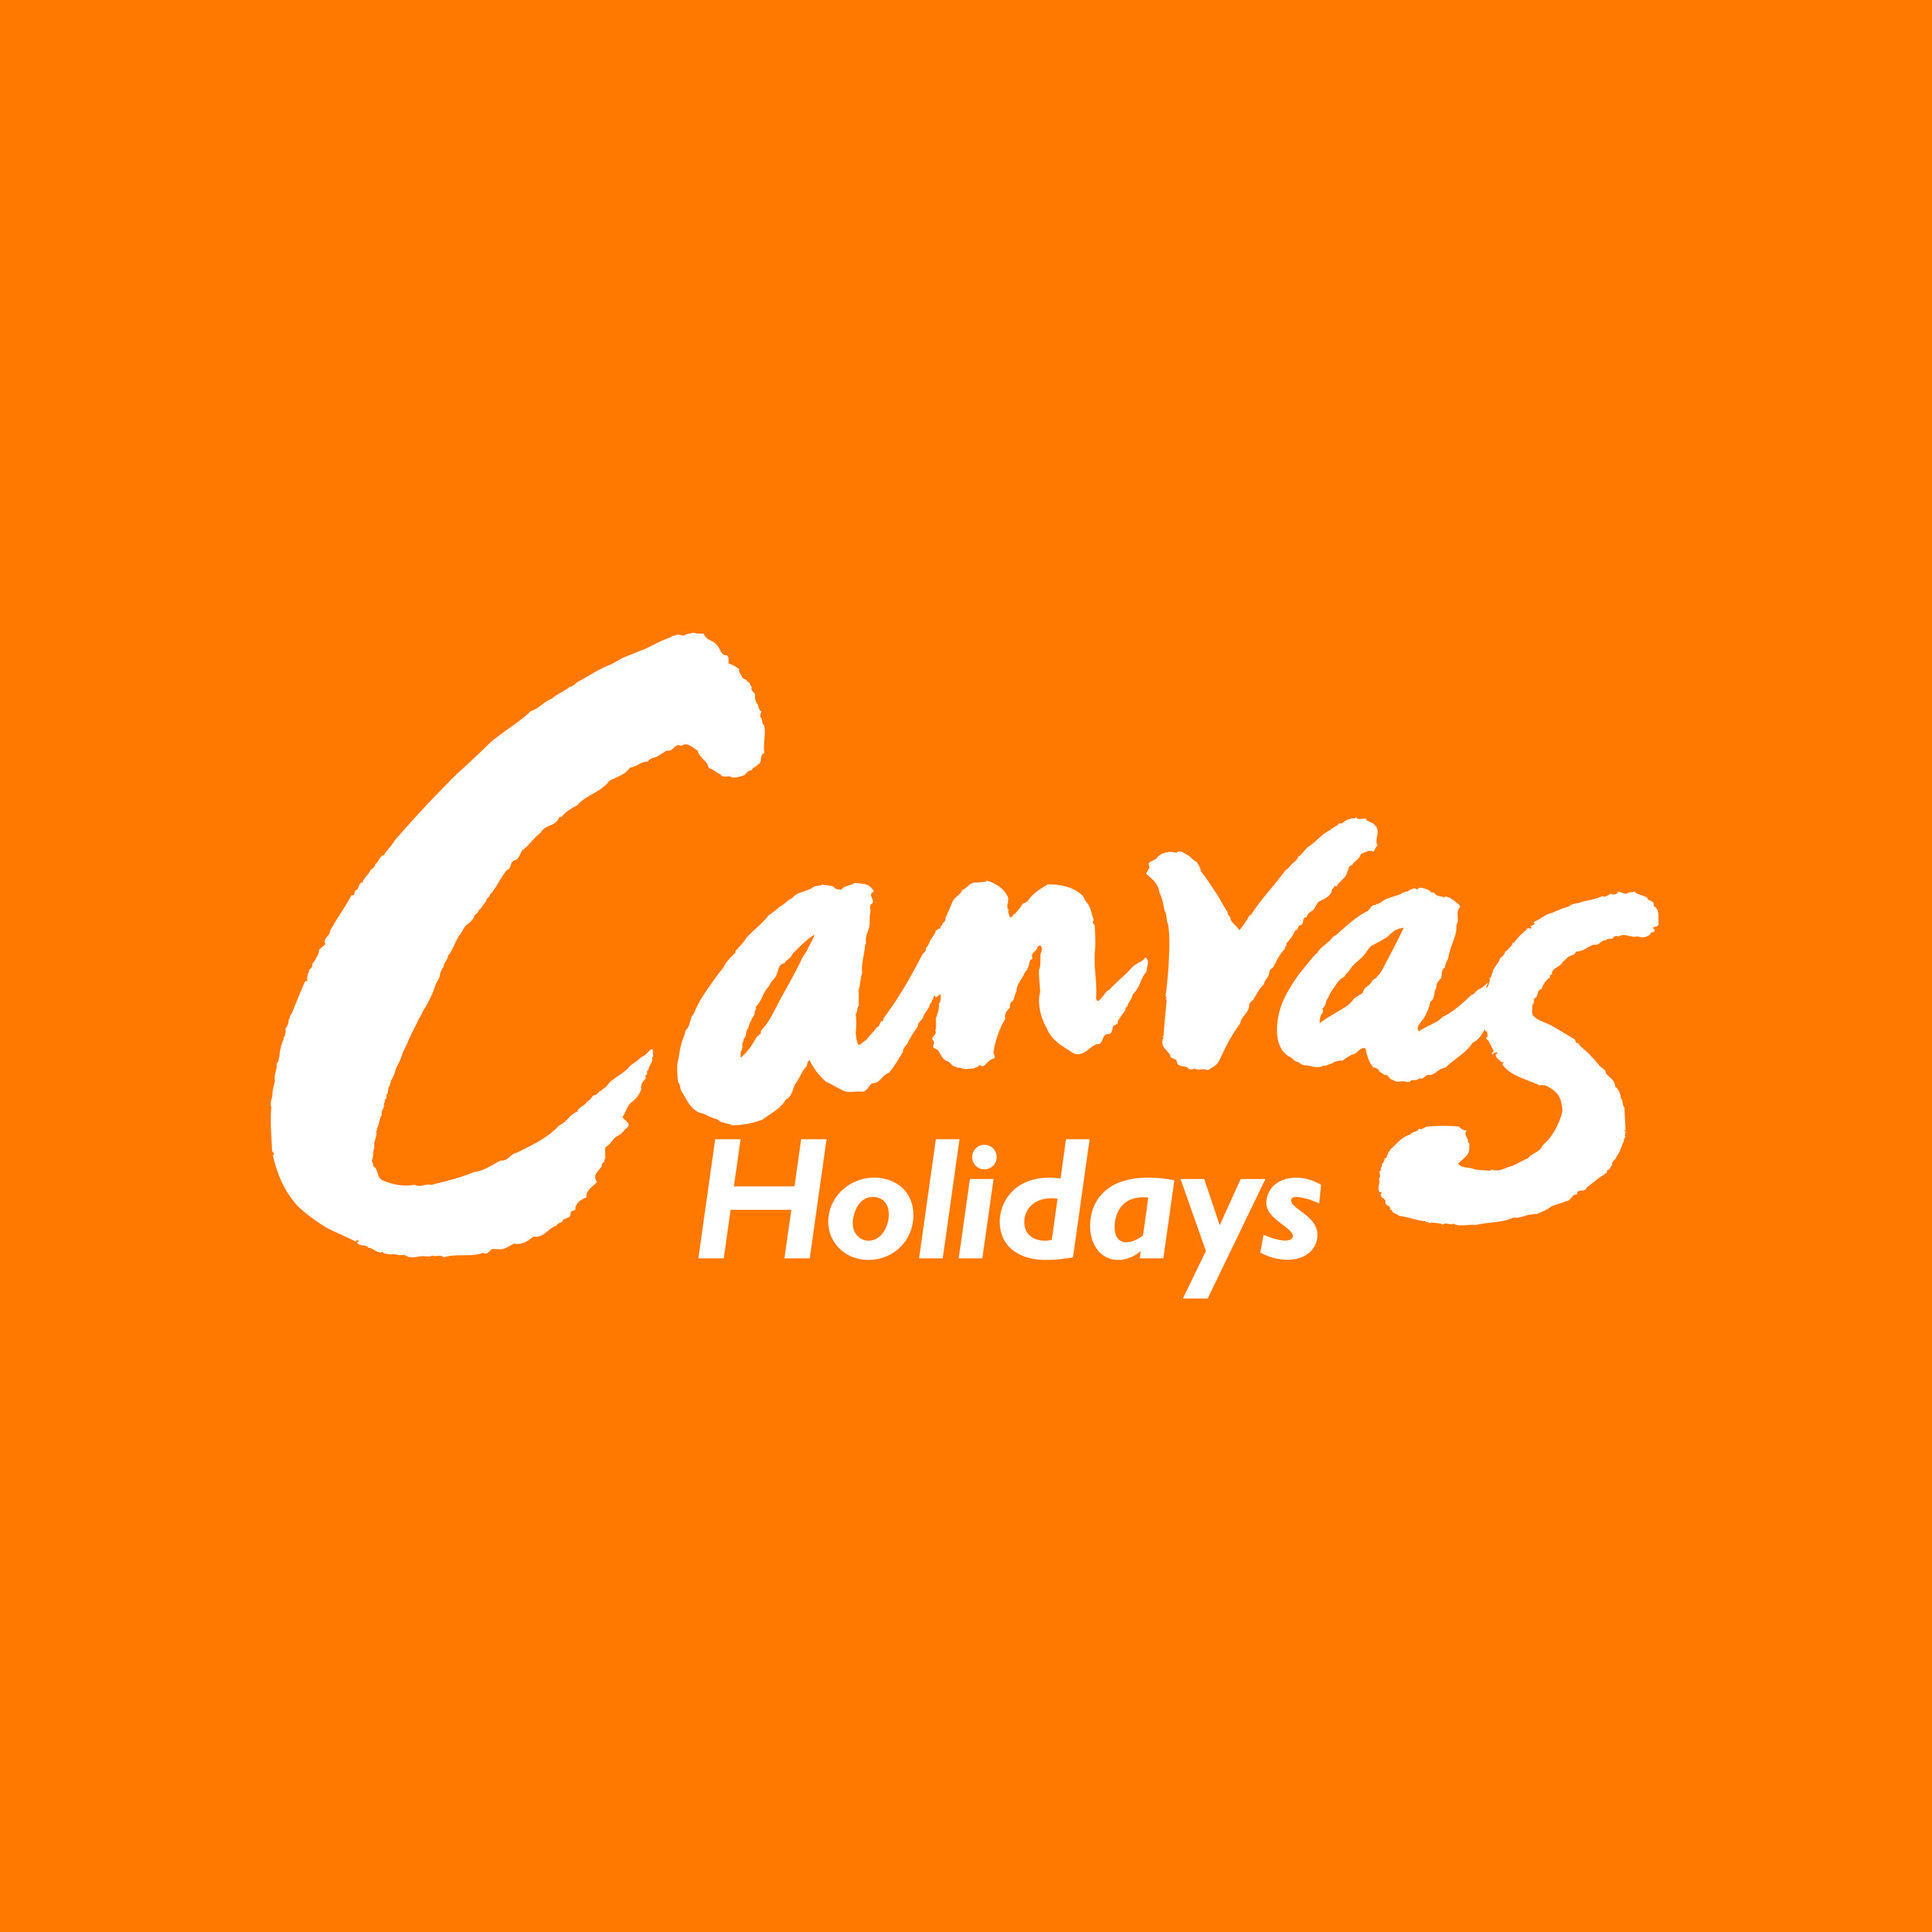 White Orange Logo - Canvas Holidays white on orange logo - JuggleMum